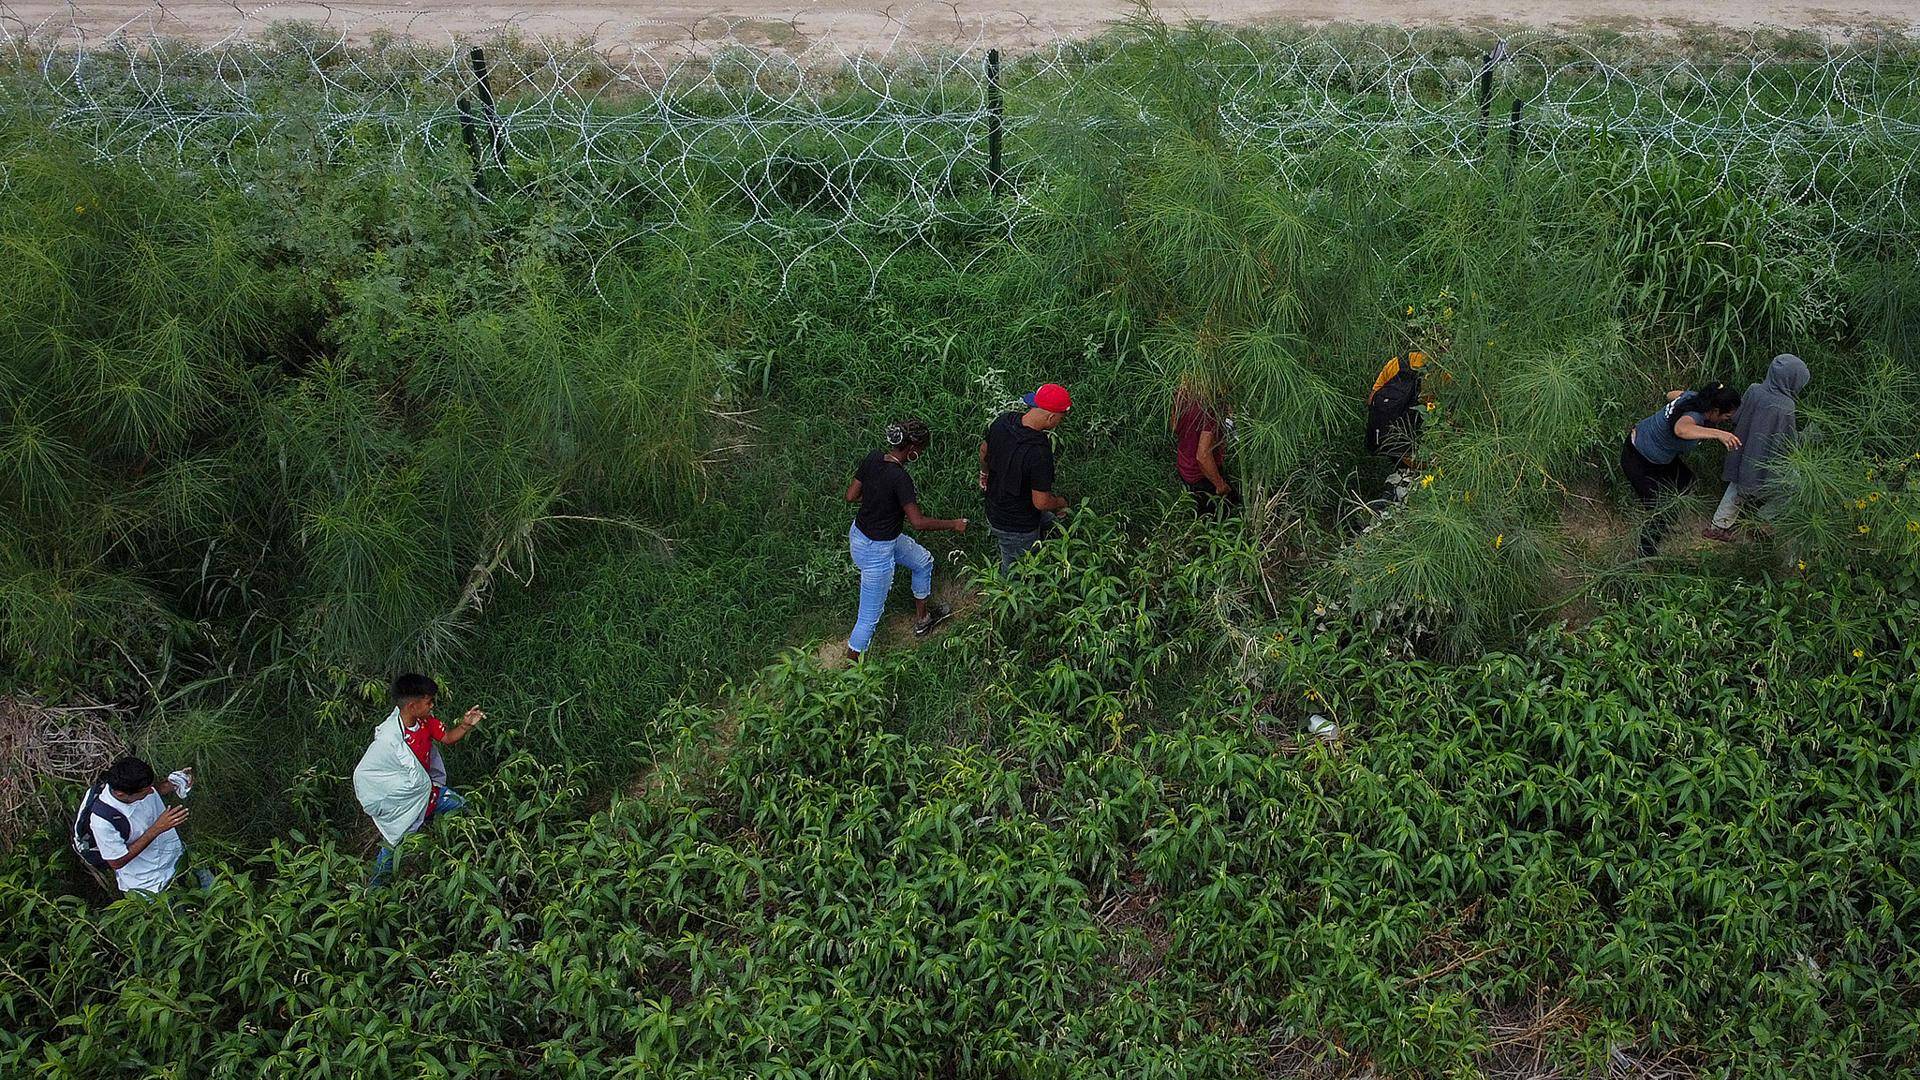 $!Un grupo de migrantes caminan a un costado del río Bravo, en la fronteriza Ciudad Juárez, Chihuahua (México). La desesperación por pasar a Estados Unidos ha provocado que muchos pongan en riesgo su vida al intentan cruzar la alambrada de navajas.